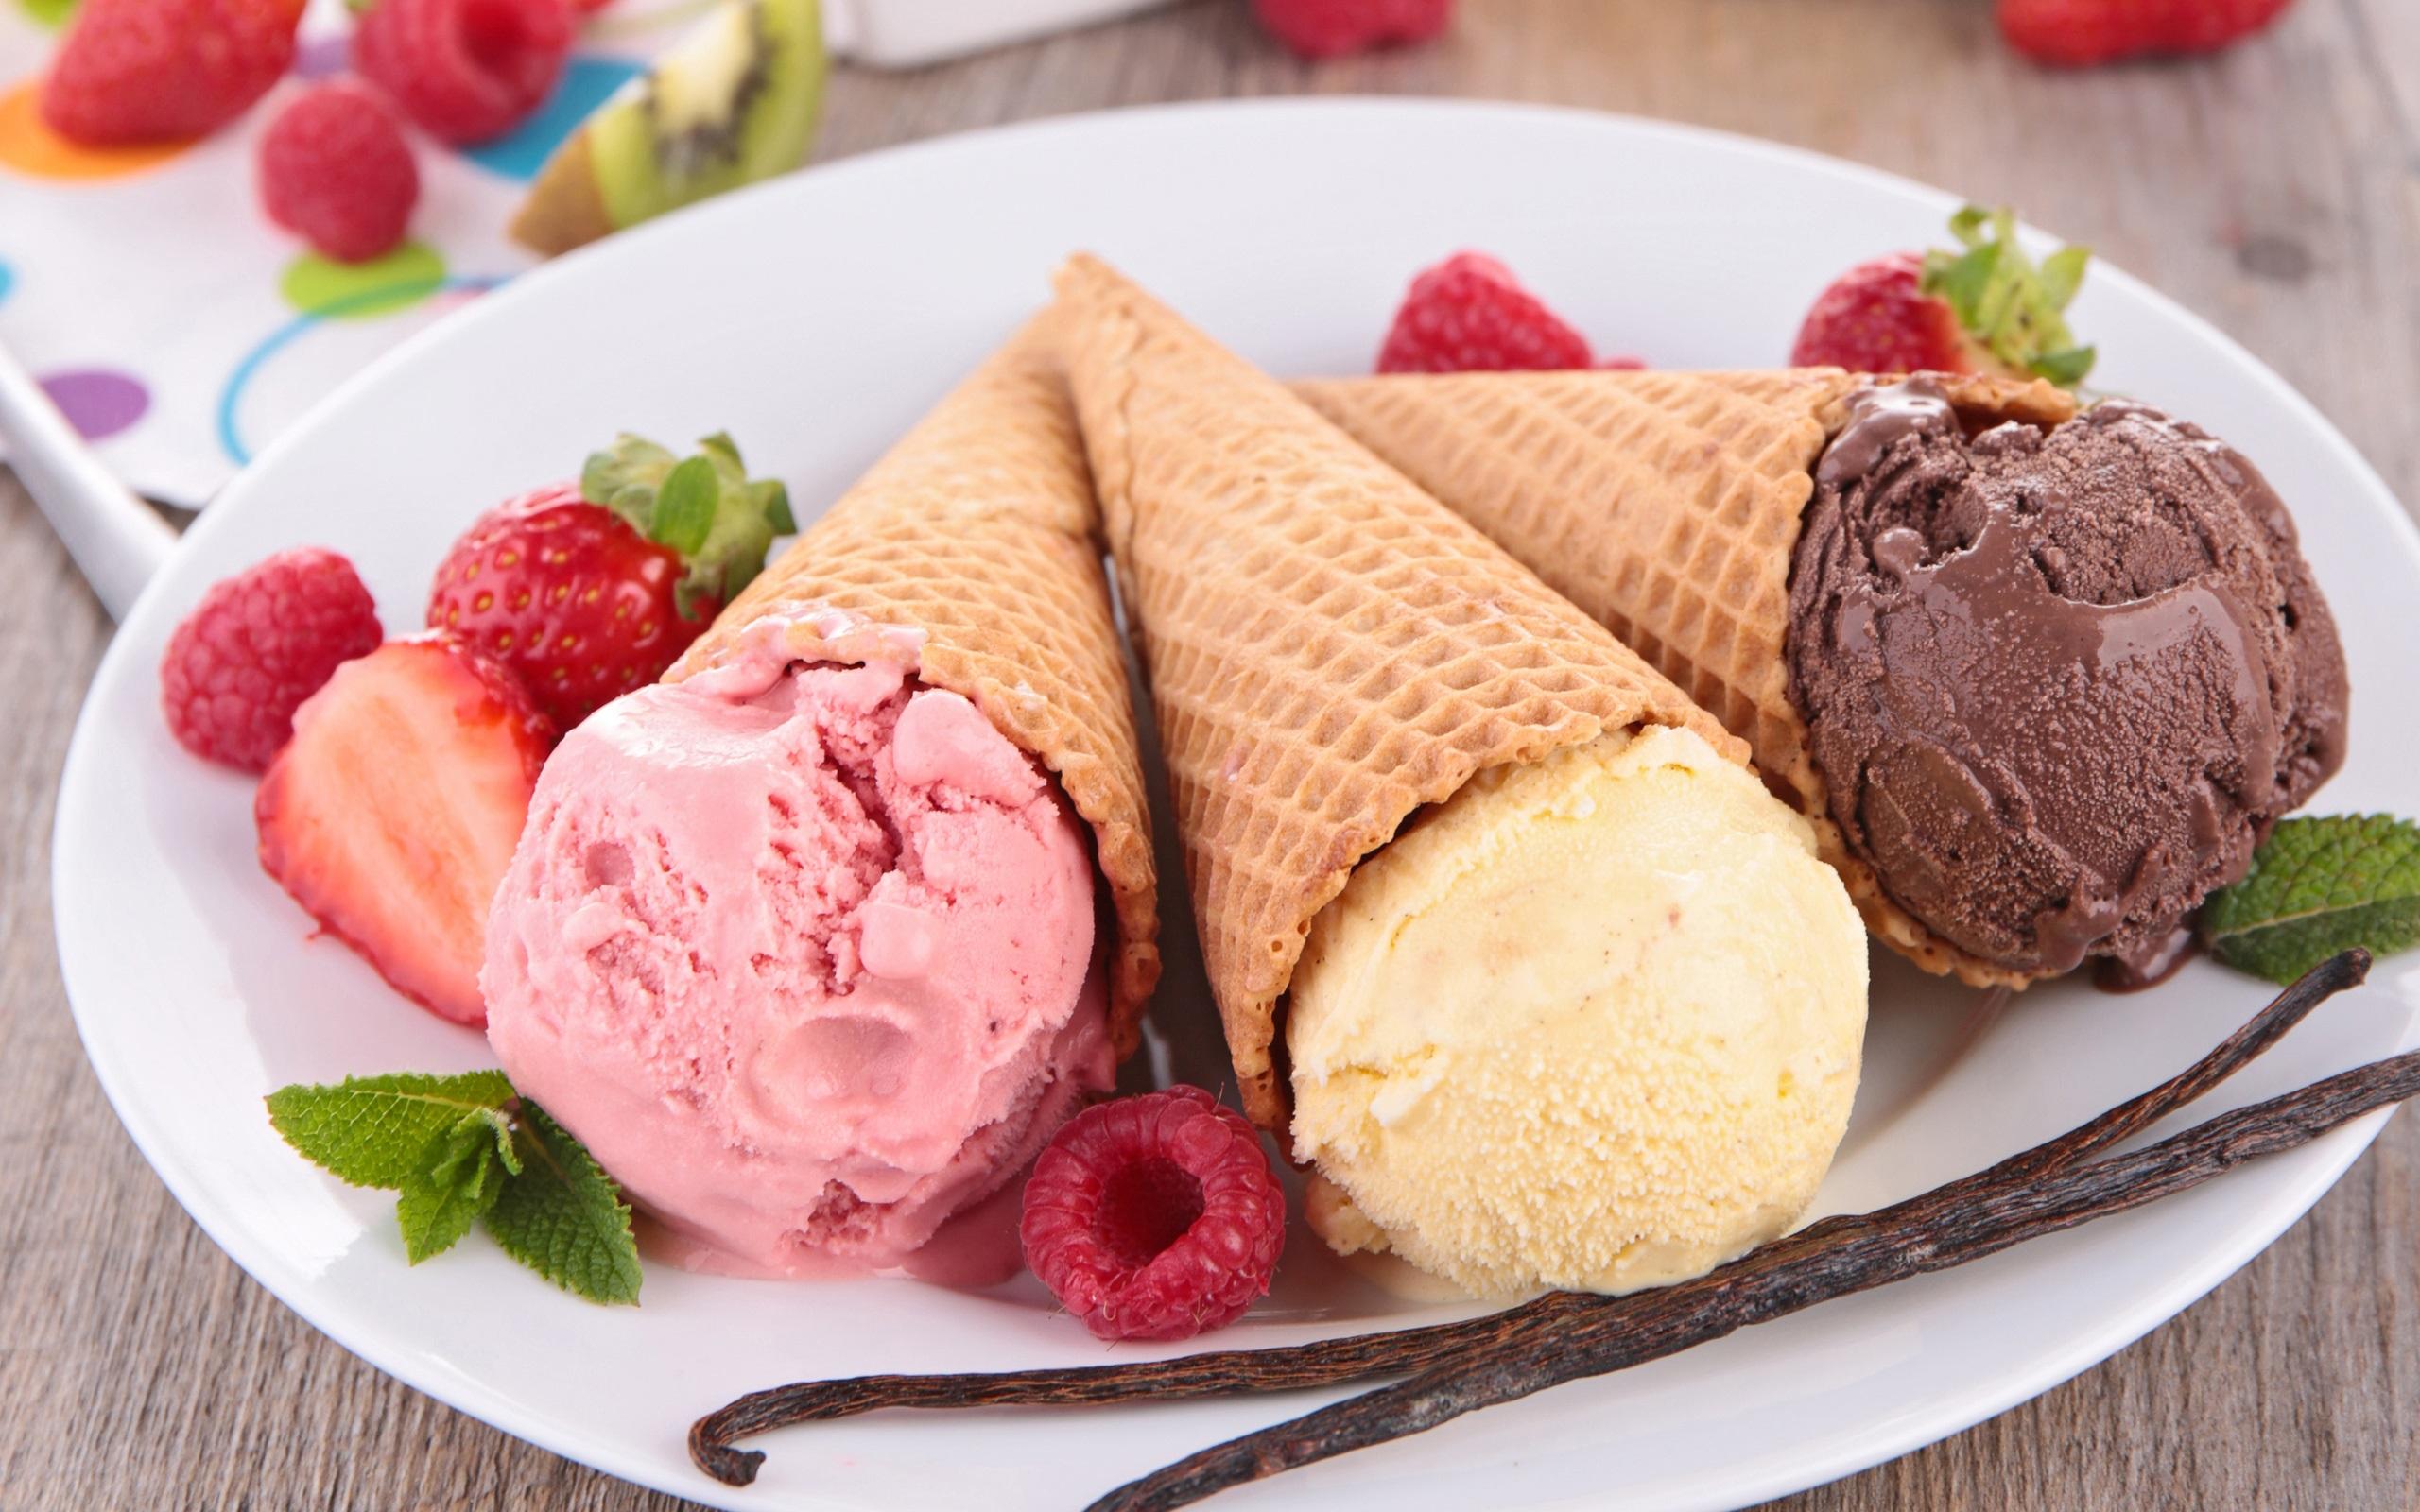 冰淇淋用聚甘油脂肪酸酯